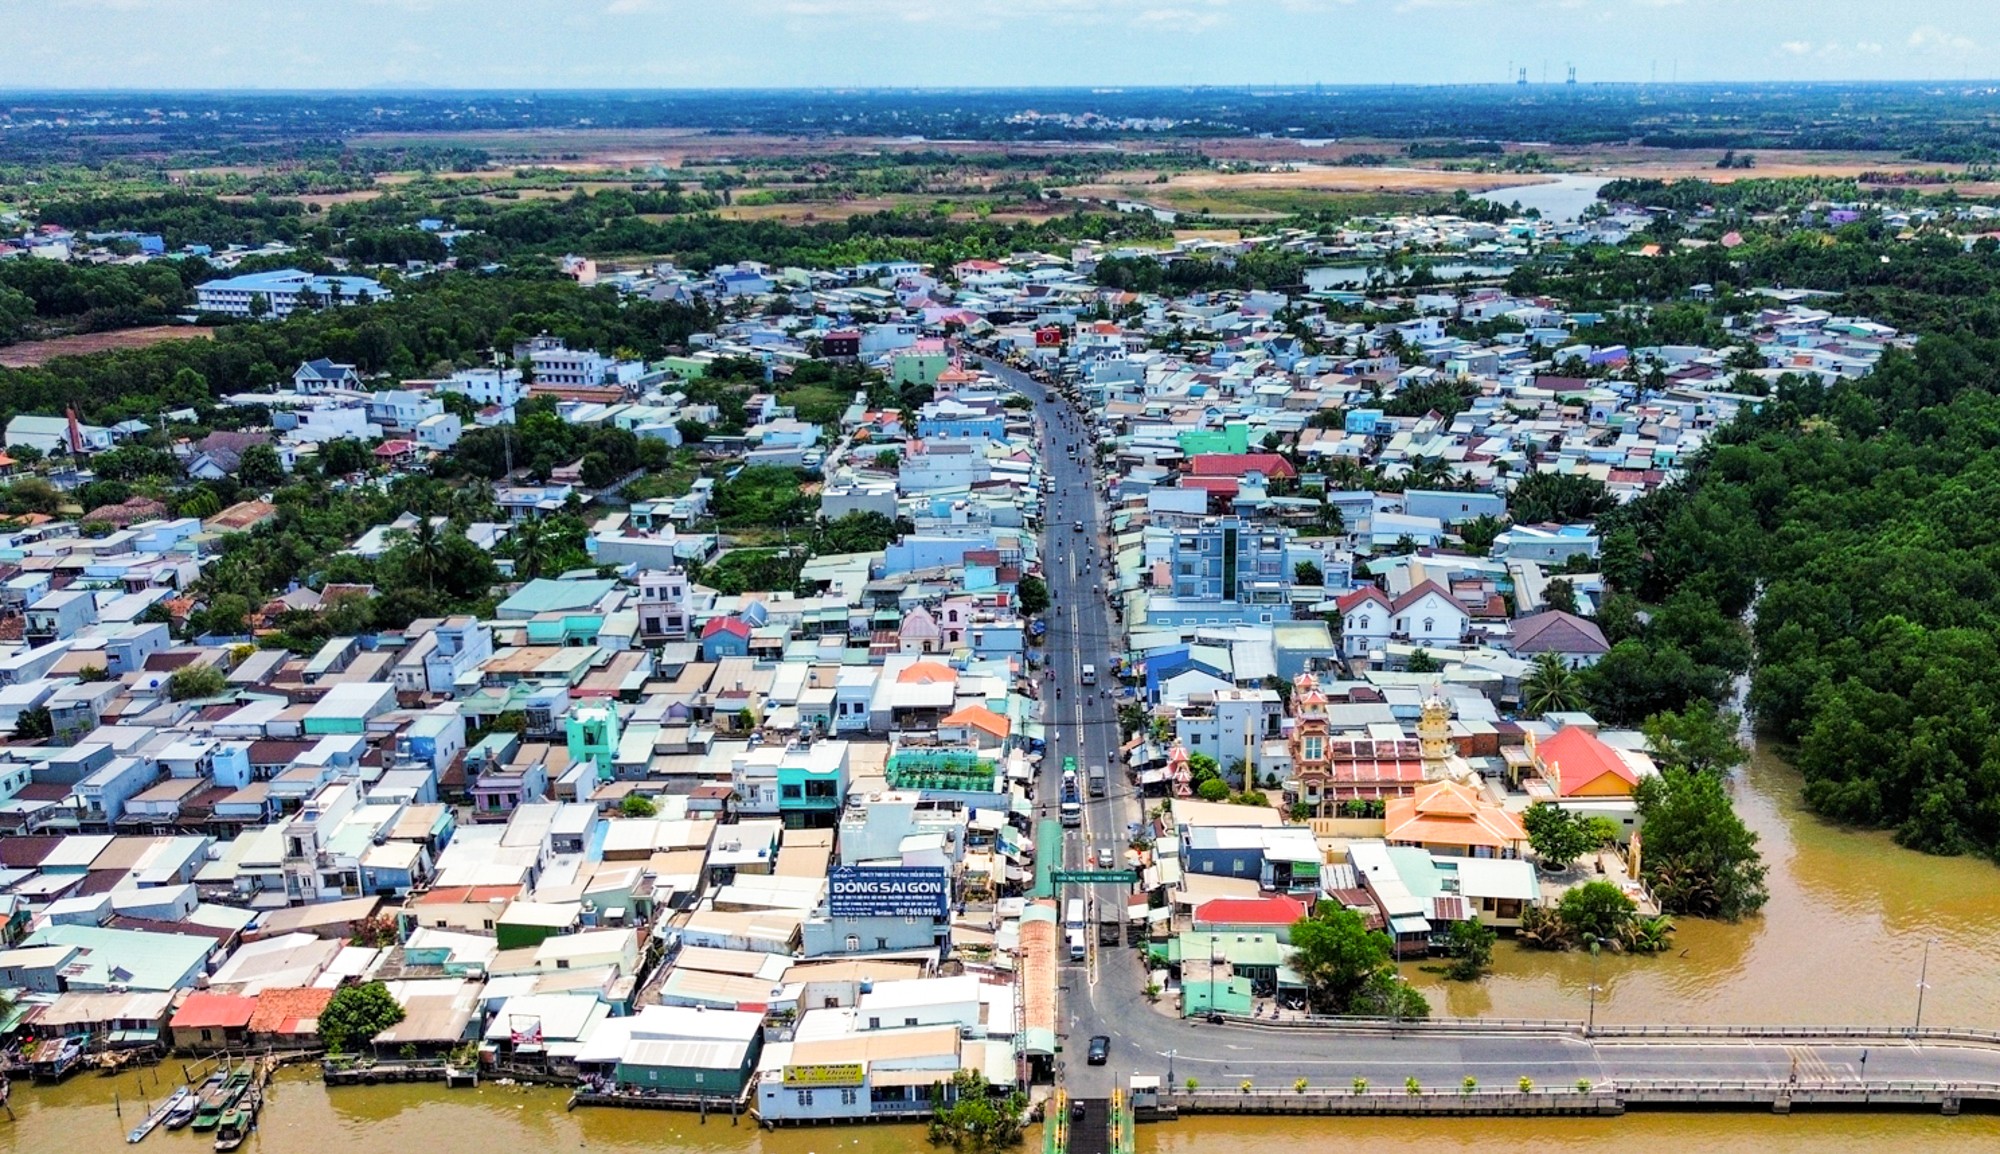 Khu vực sẽ xây cầu kết nối TP.HCM với huyện có nhiều khu công nghiệp nhất Việt Nam, loạt dự án bất động sản tỷ USD hưởng lợi- Ảnh 5.